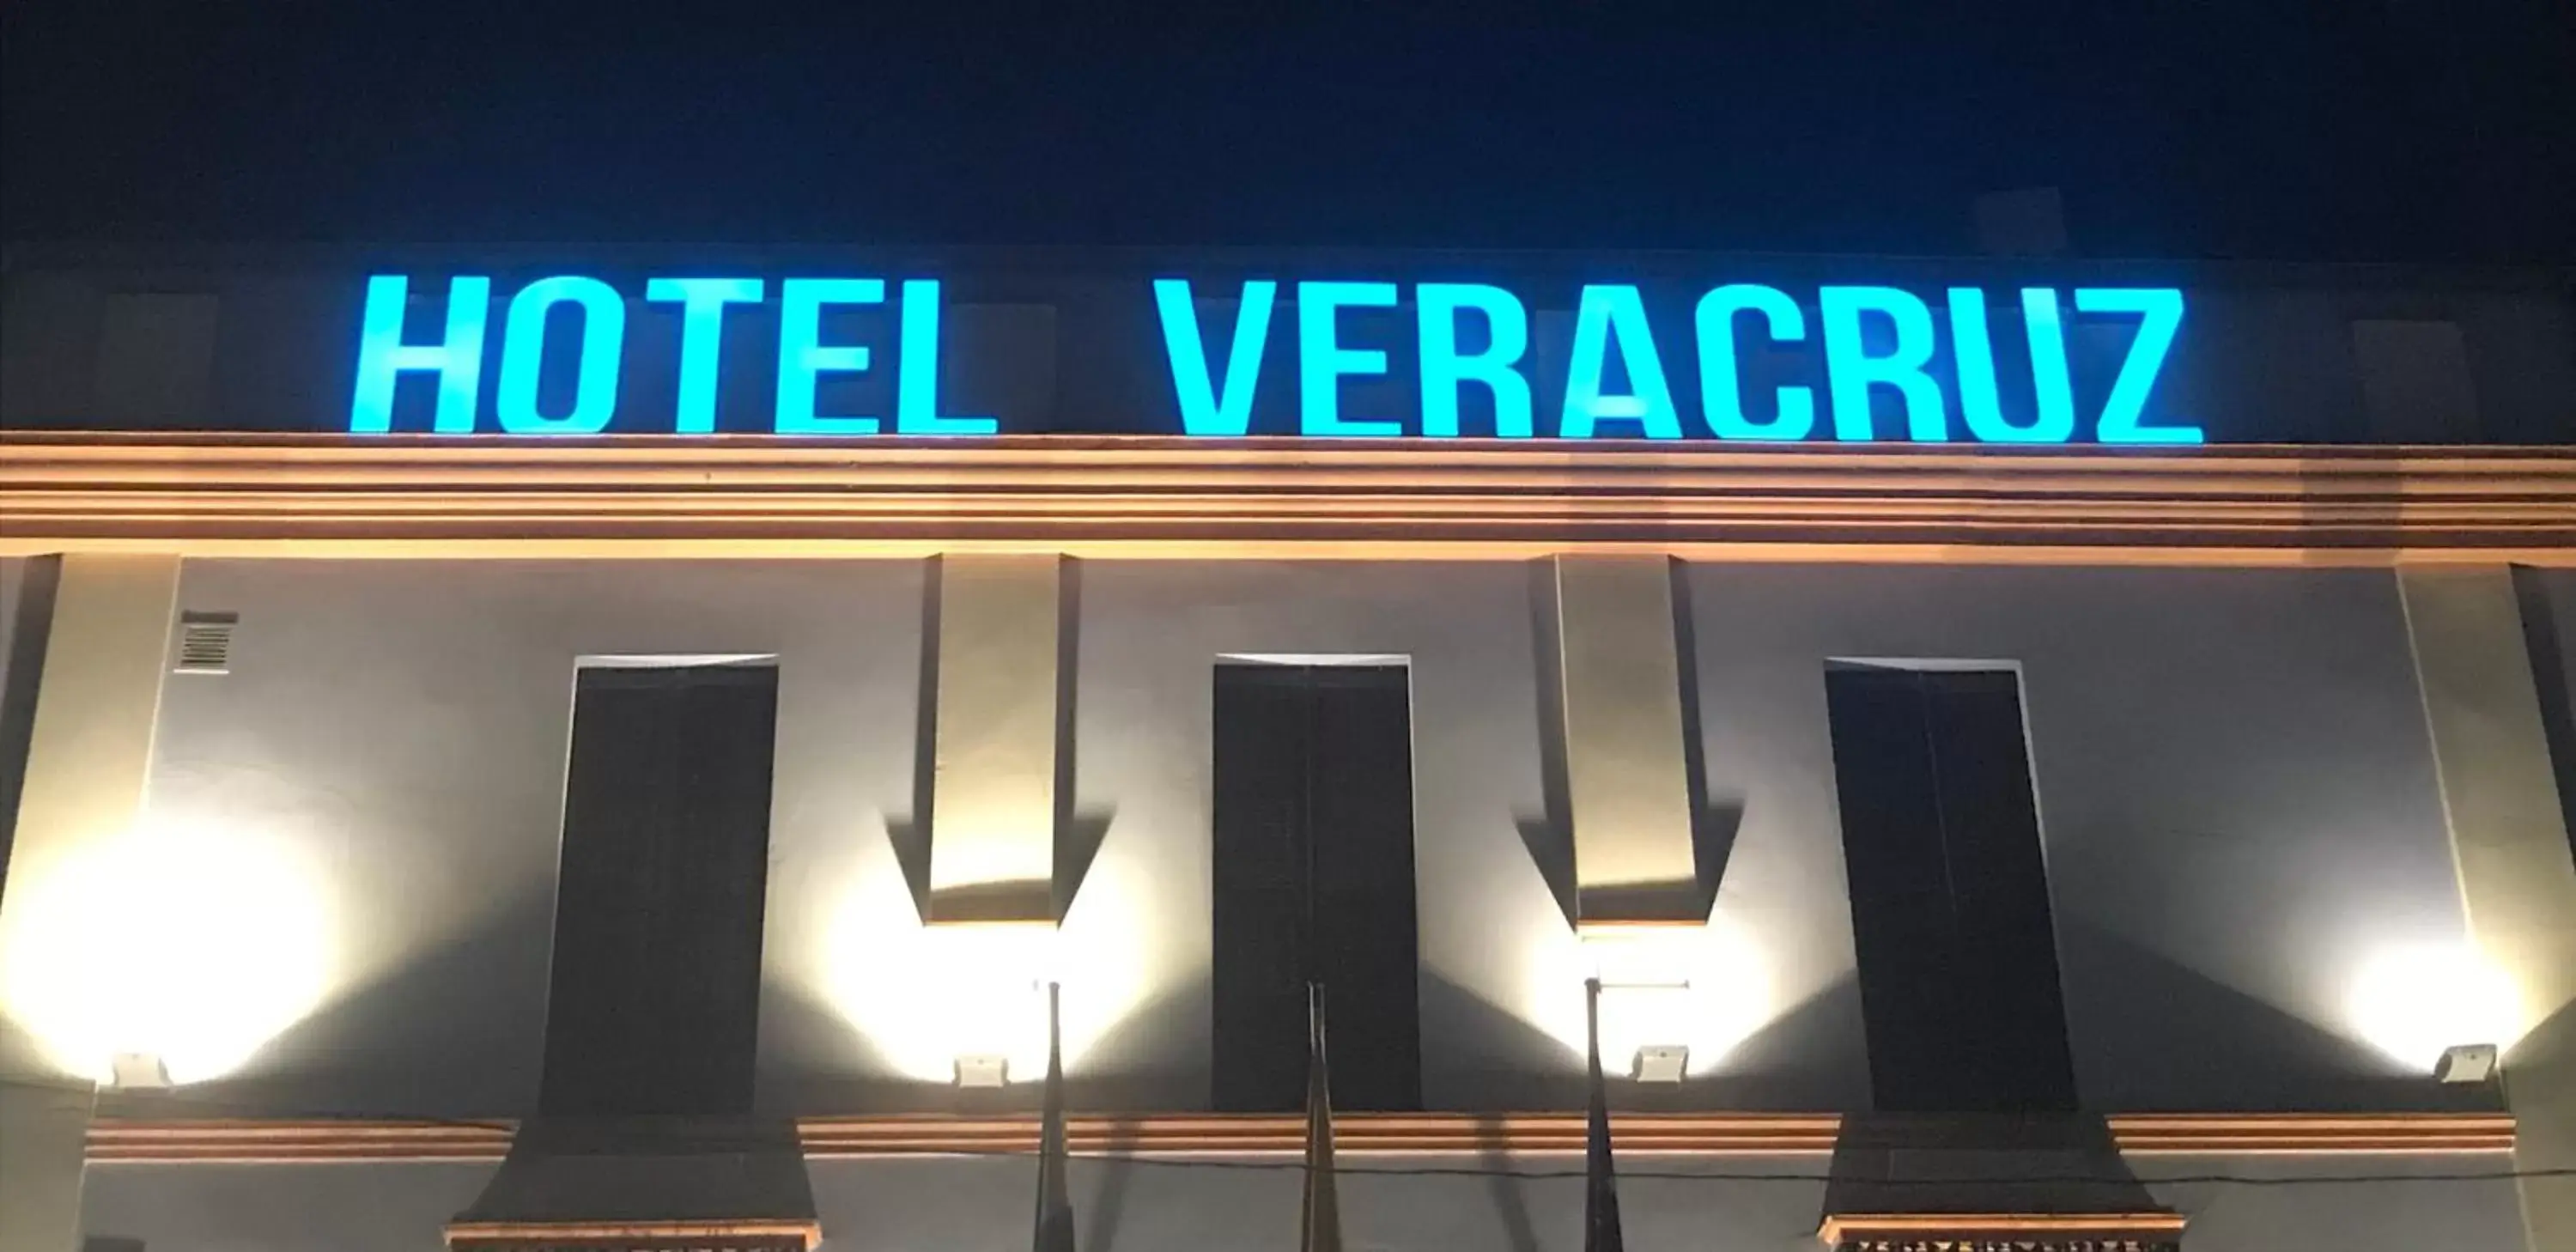 Property Logo/Sign in Hotel Veracruz